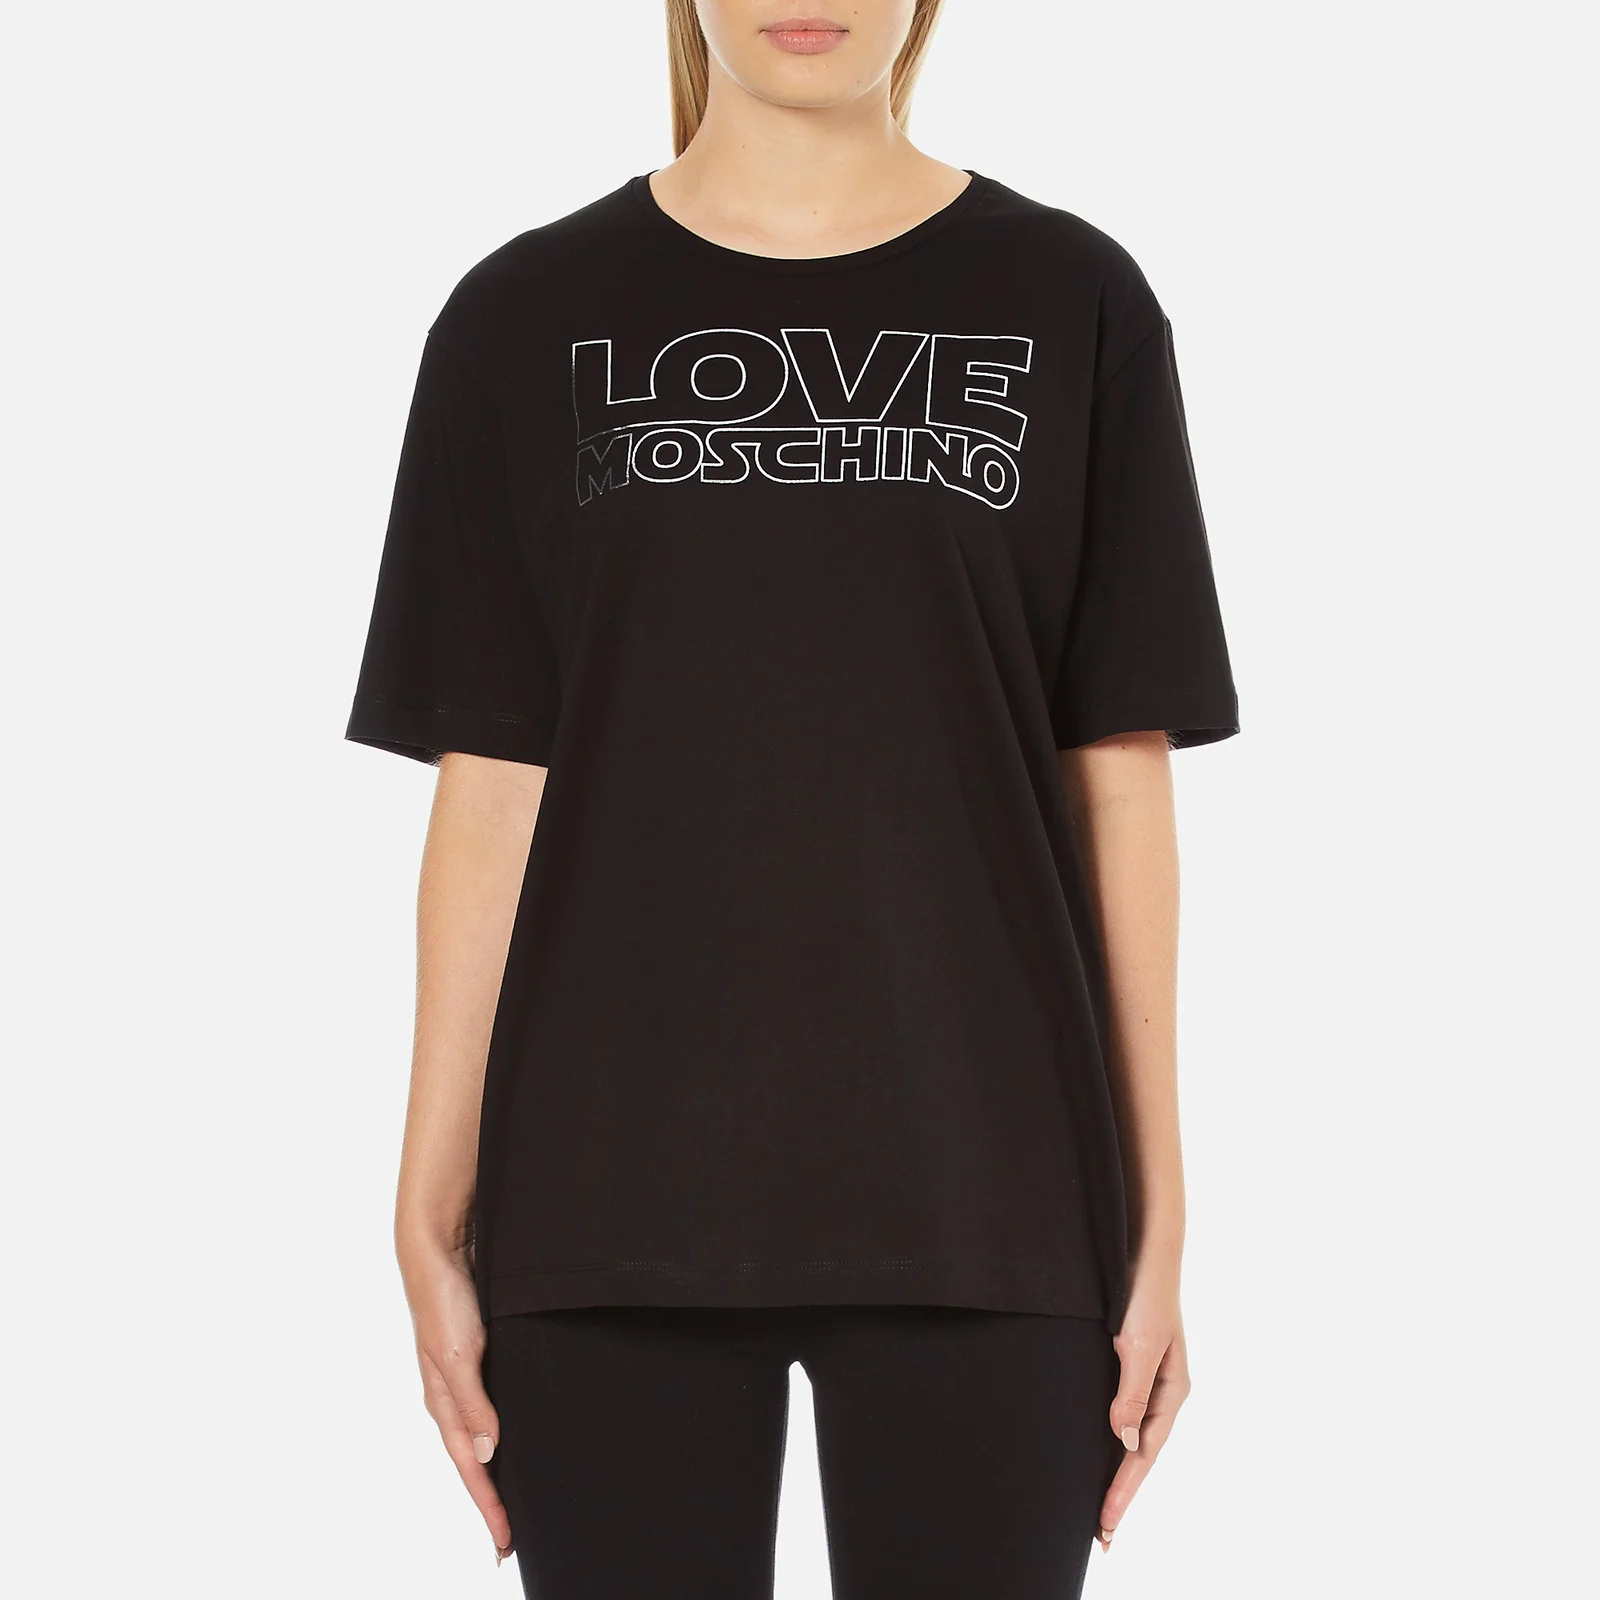 Love Moschino Women's Logo T-Shirt - Black Image 1